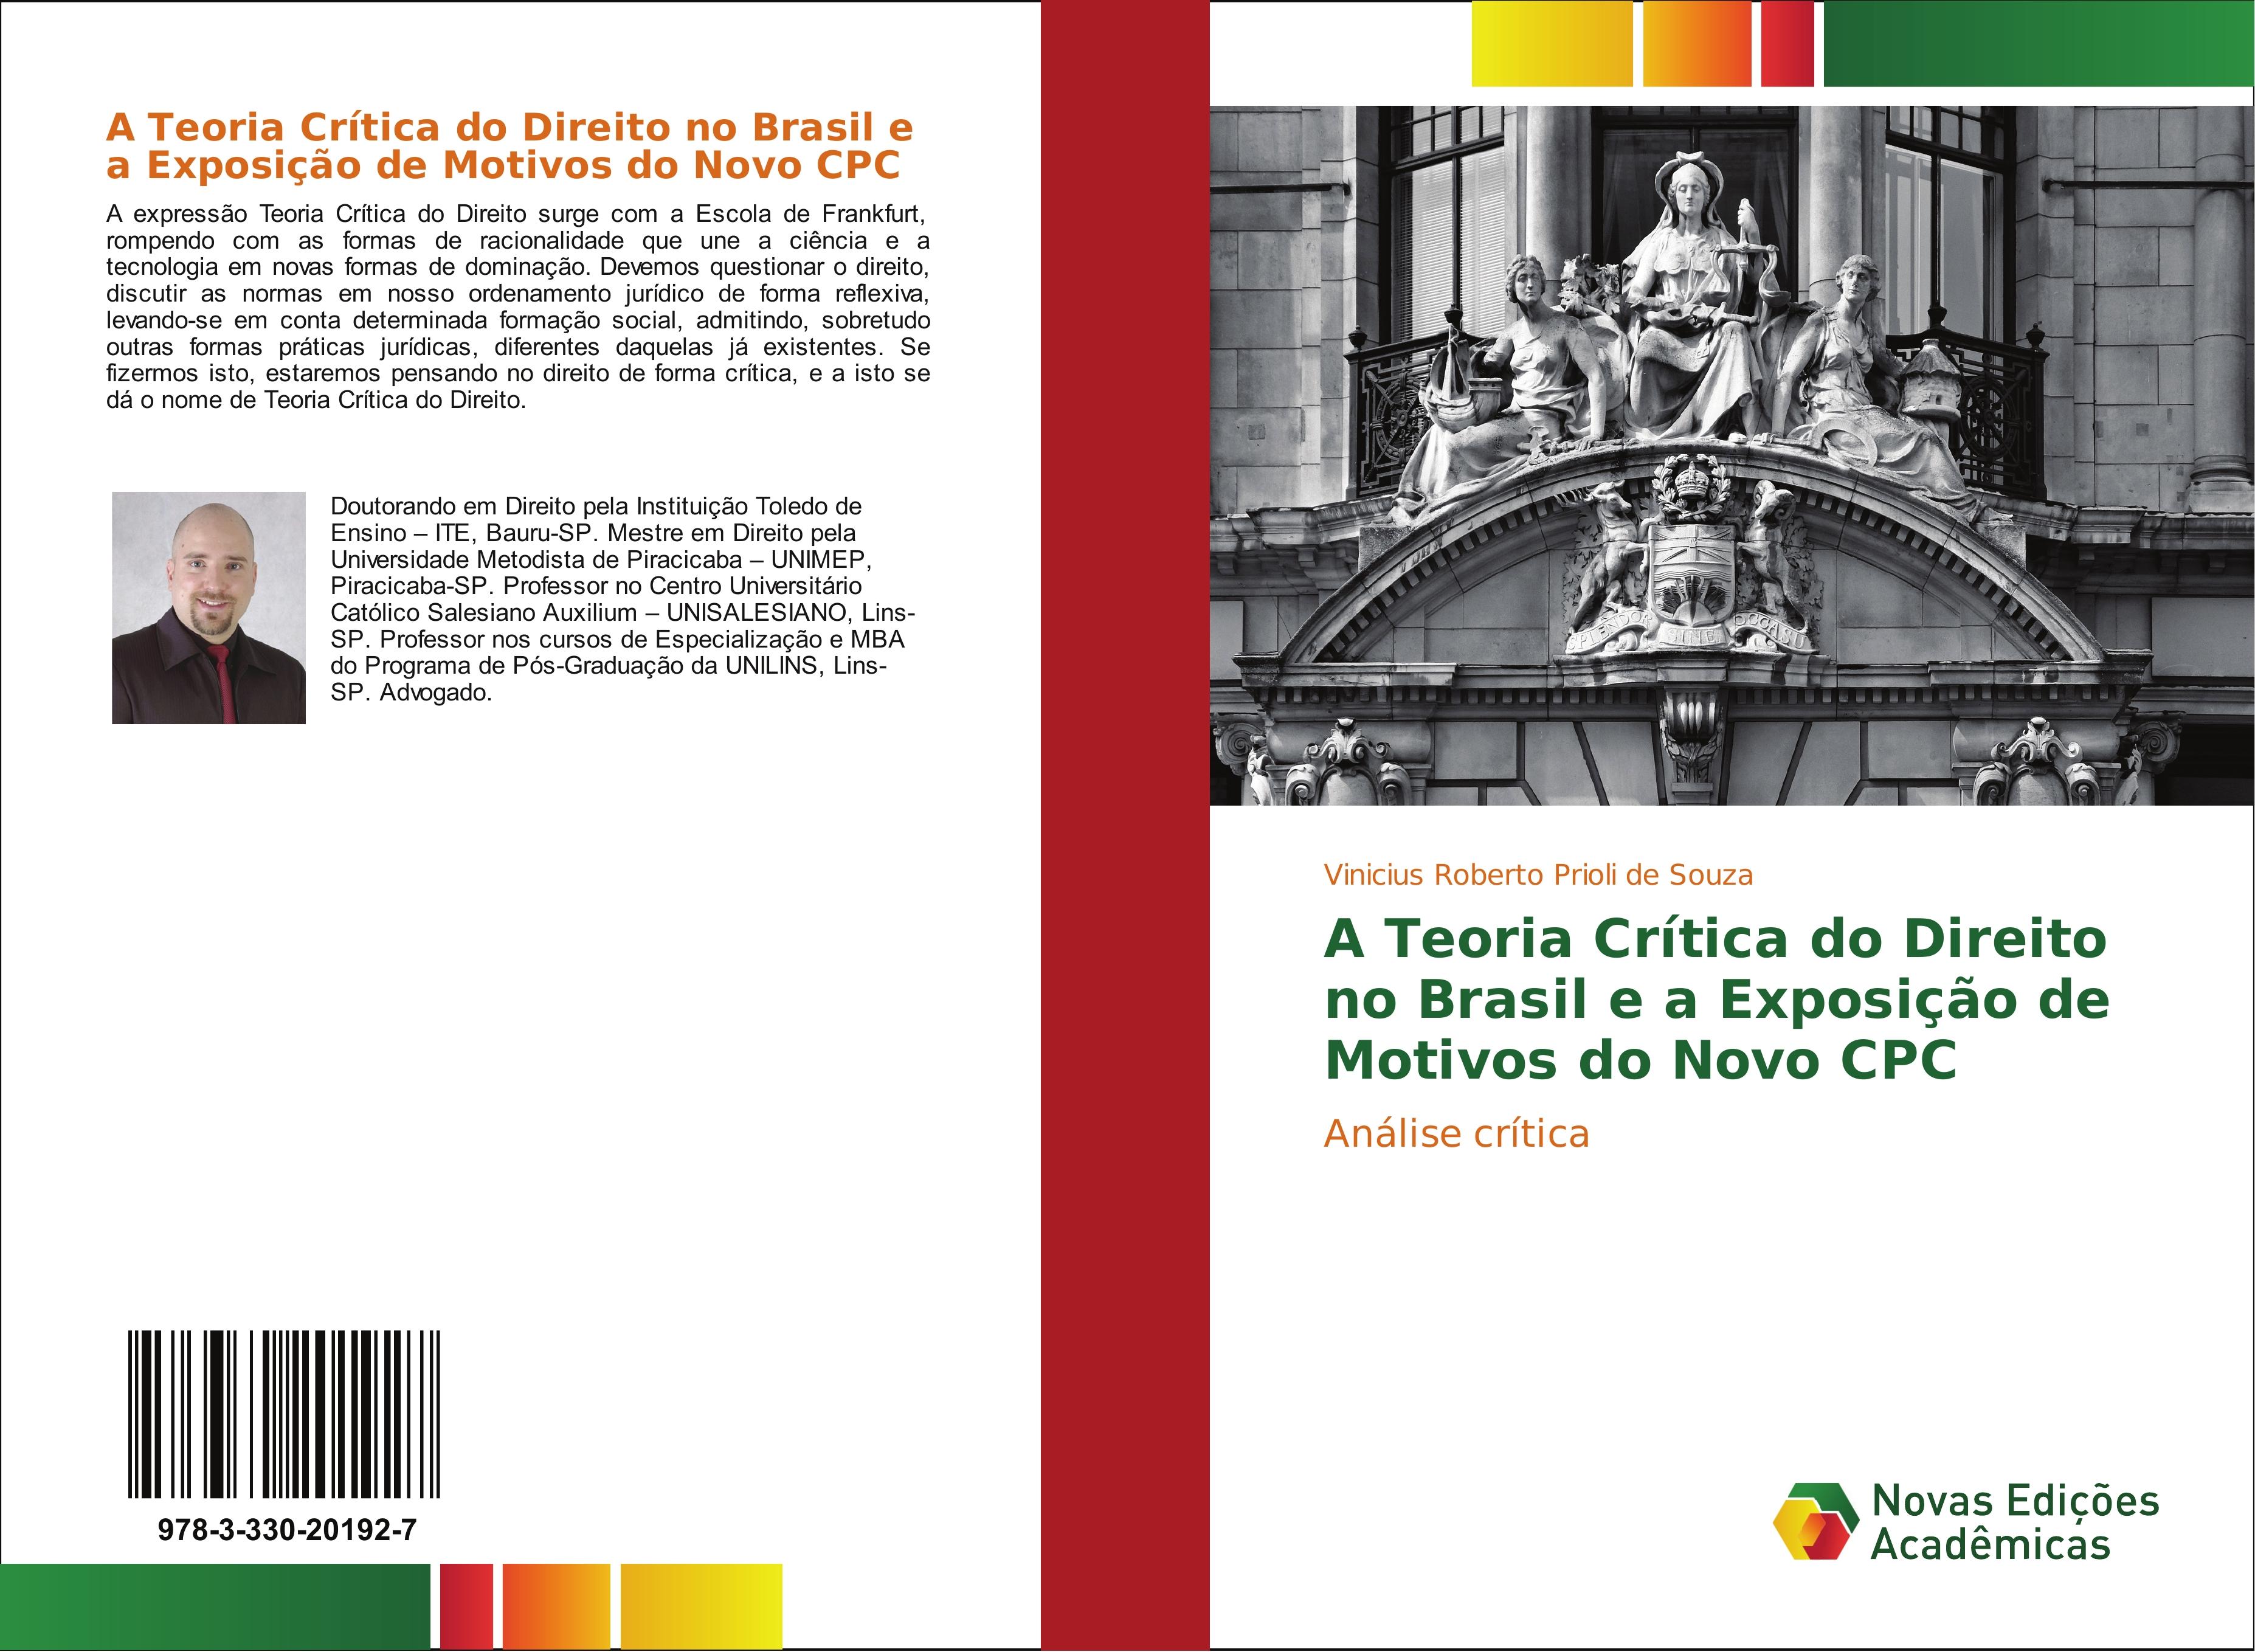 A Teoria Crítica do Direito no Brasil e a Exposição de Motivos do Novo CPC - Vinicius Roberto Prioli de Souza